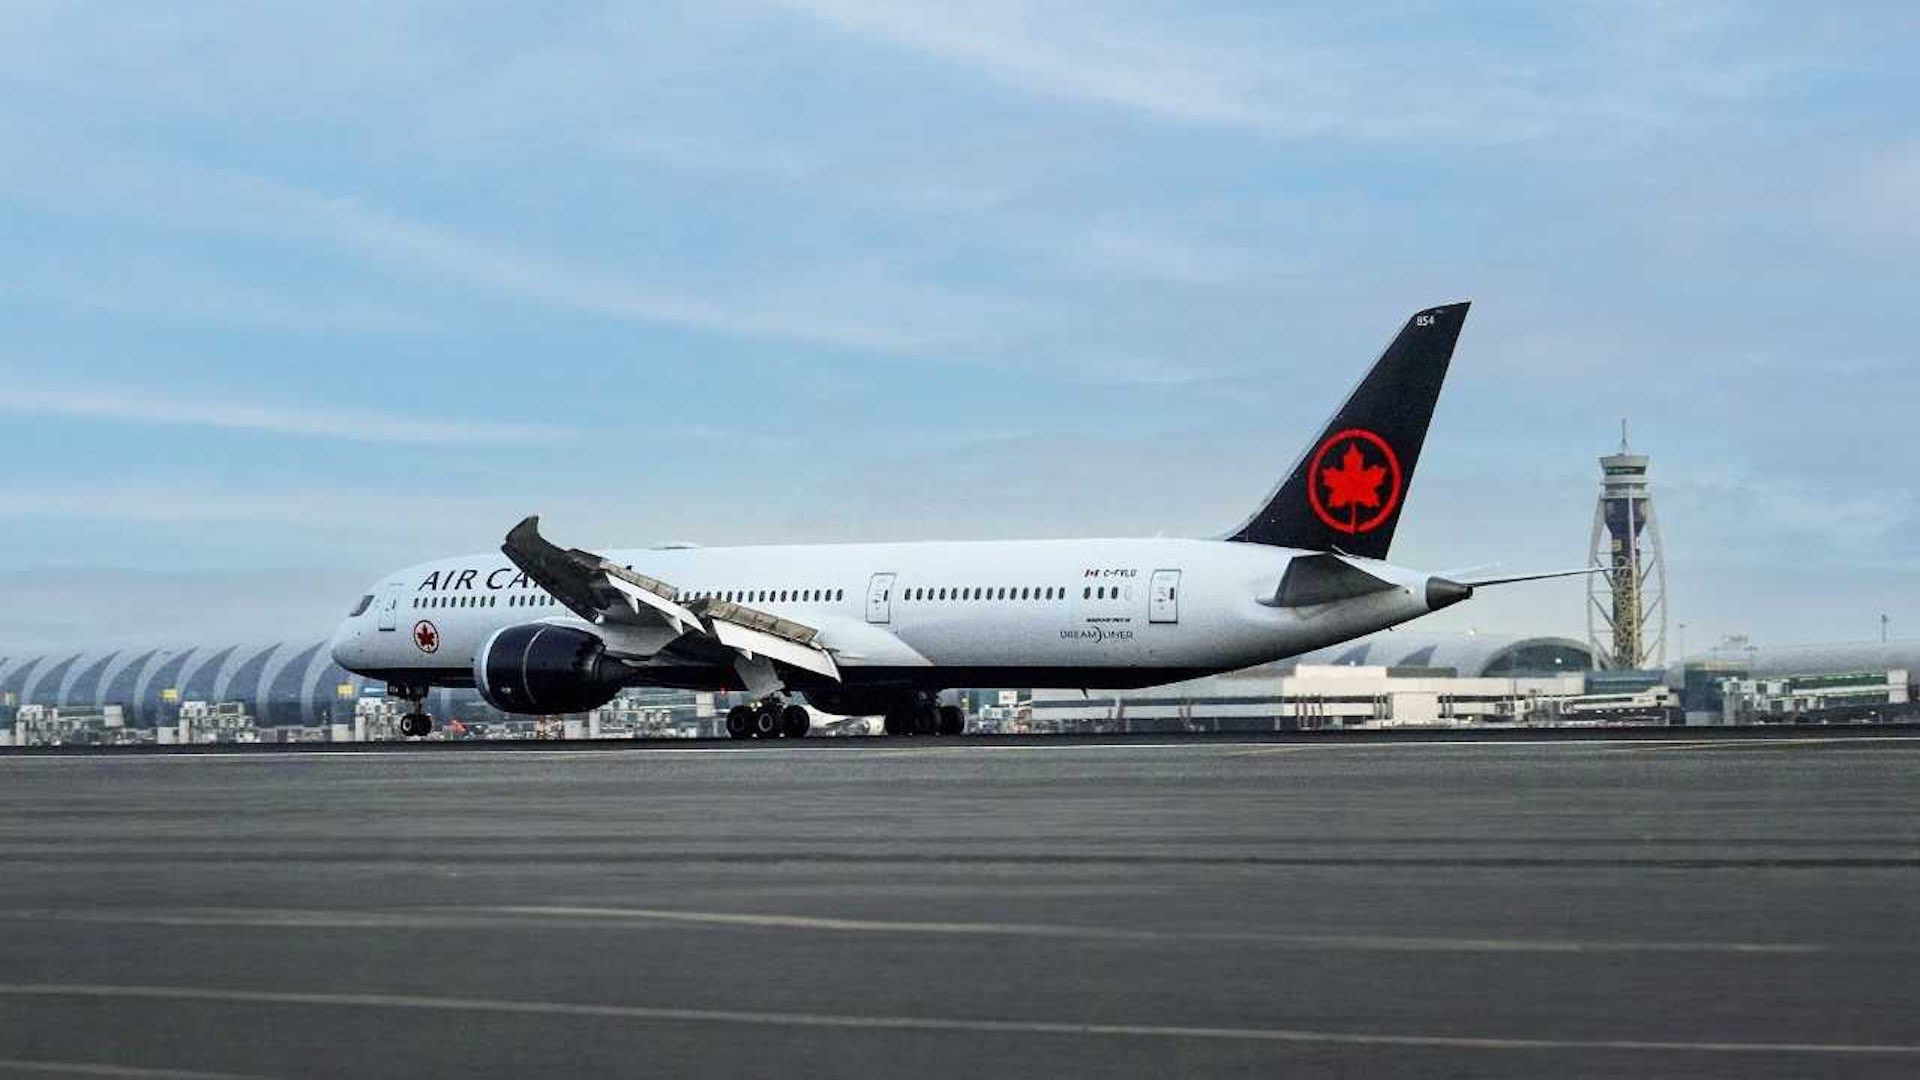 Air Canada makes debut landing at DXB Terminal 3